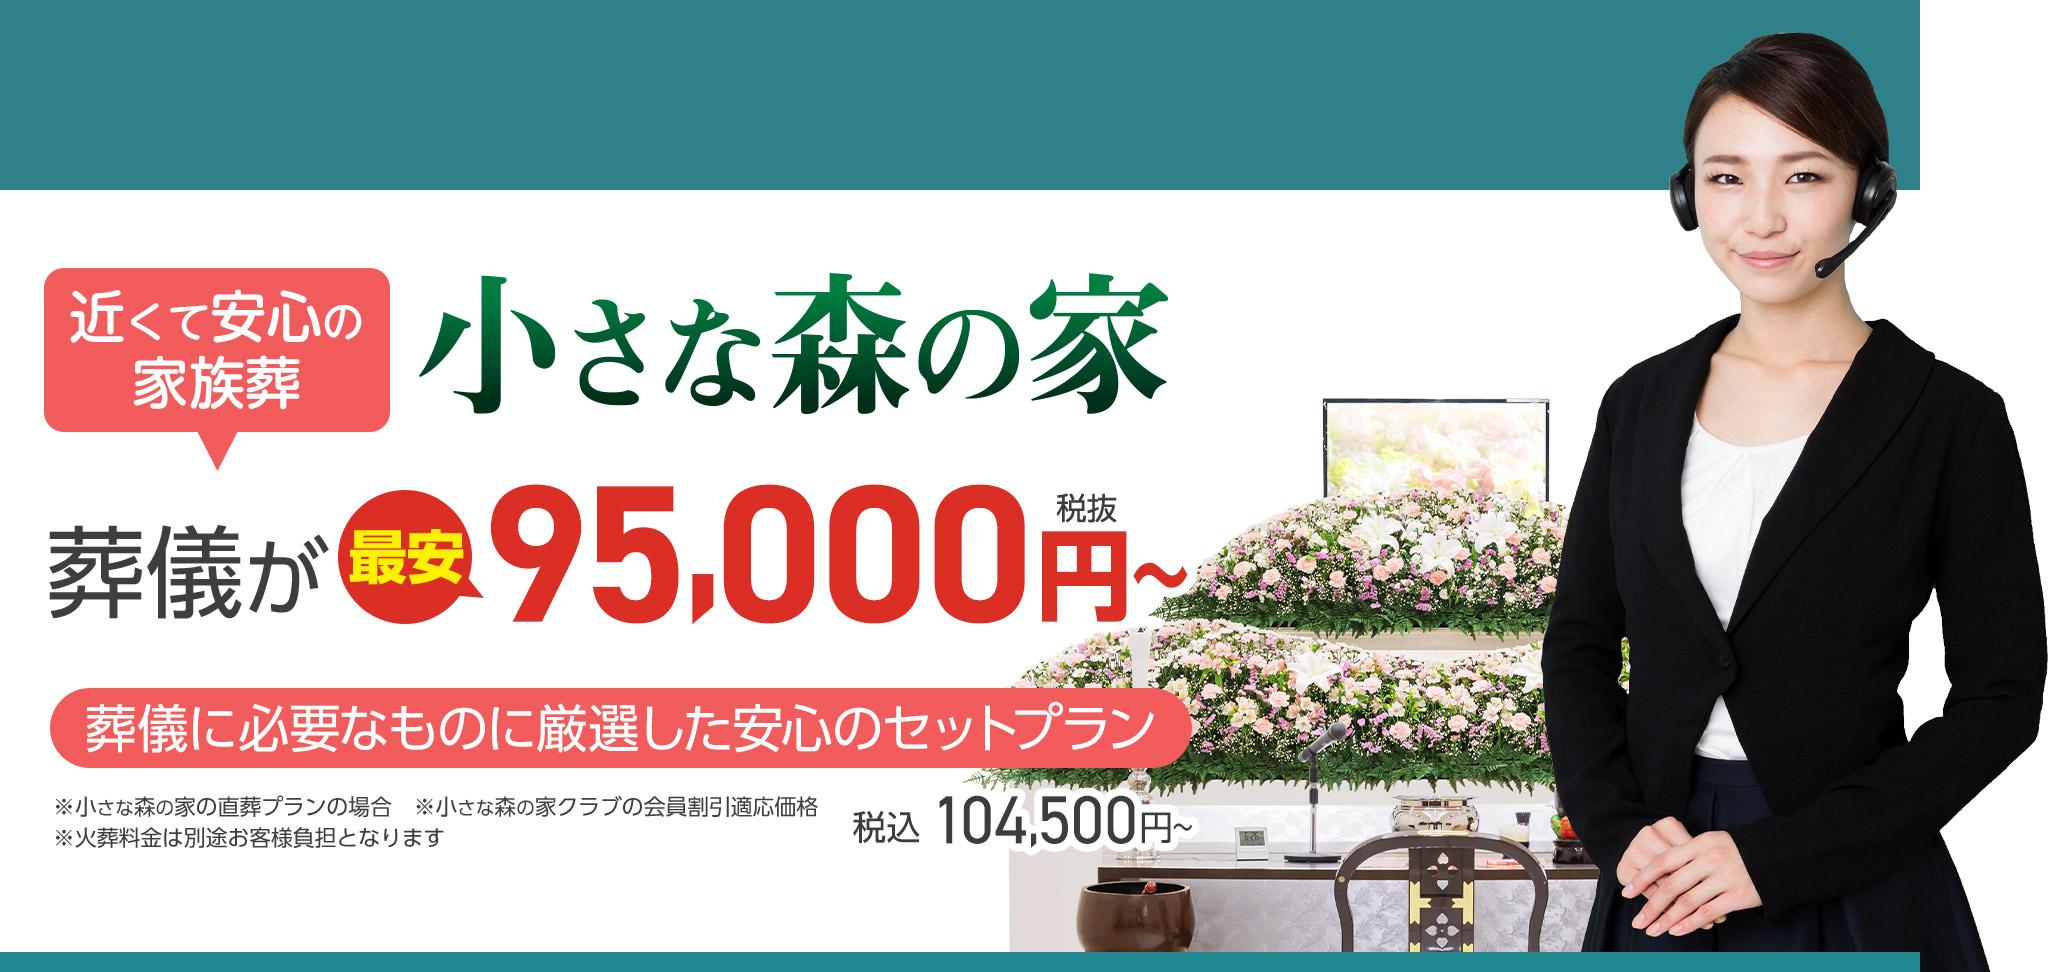 坂東市で家族葬をお探しなら小さな森の家 近くて安心の葬儀・家族葬がWEB限定税抜95,000円